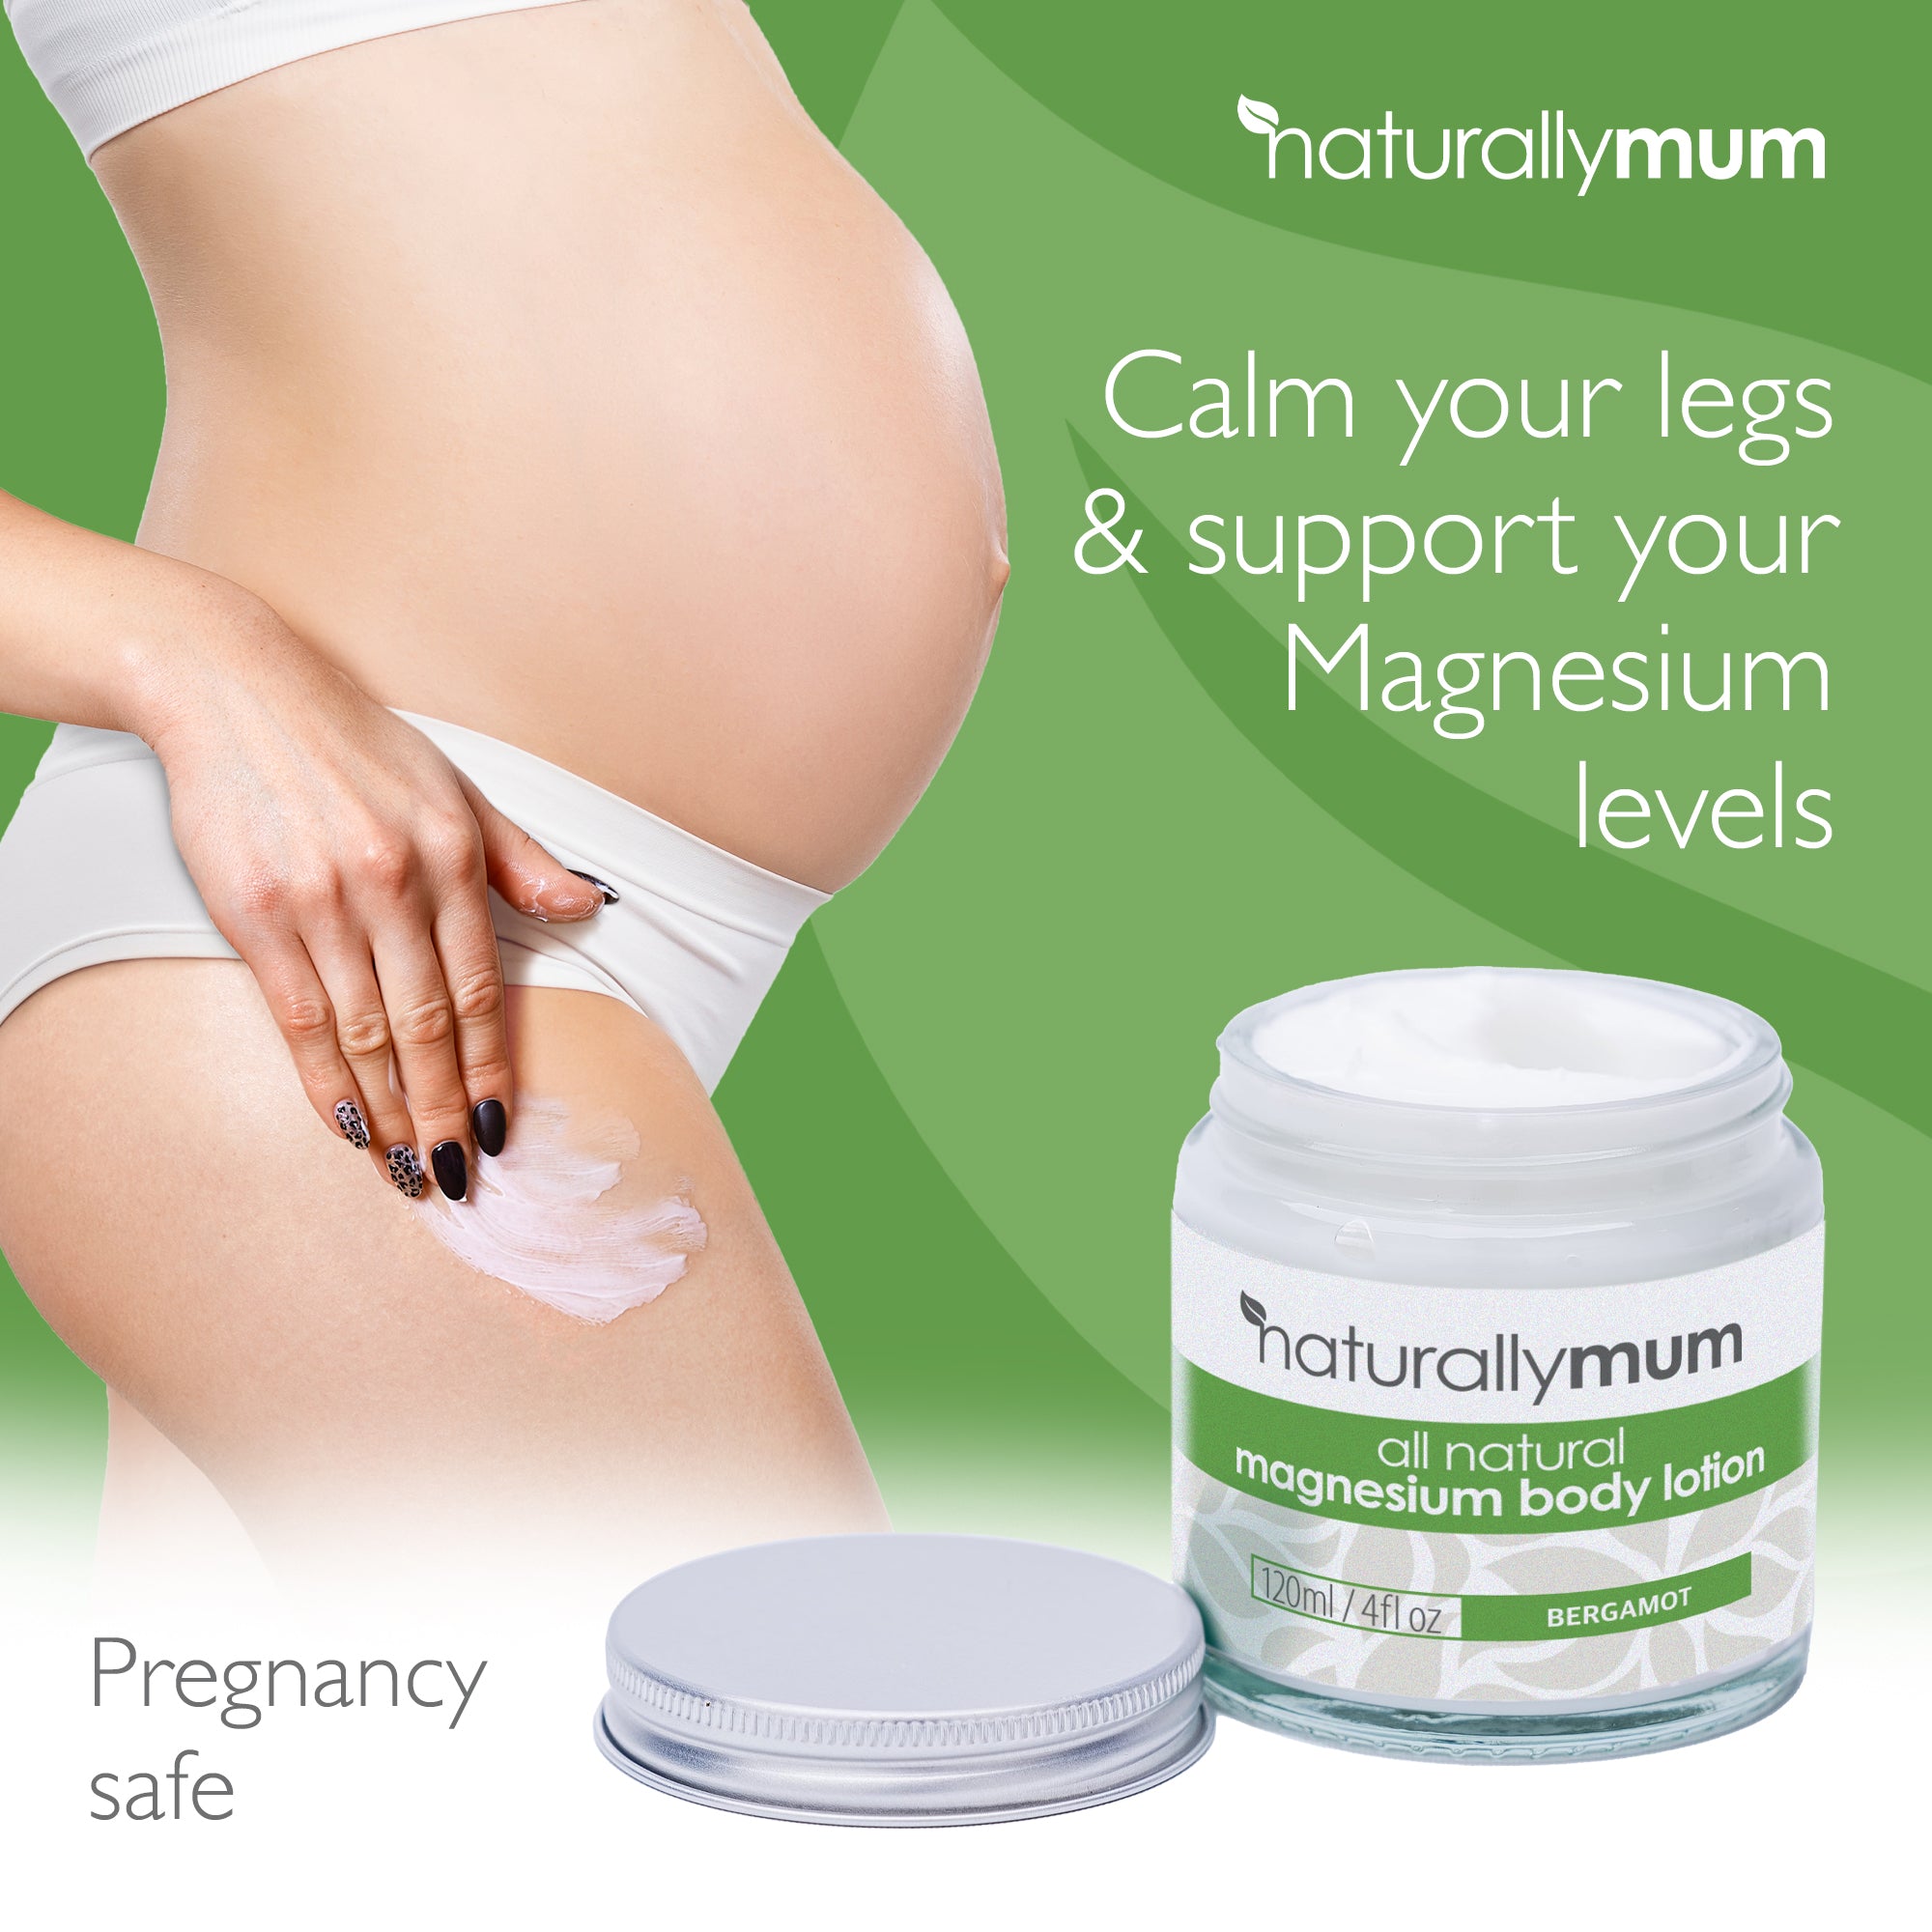 NaturallyMum Magnesium Body Lotion | Bergamot | 120ml